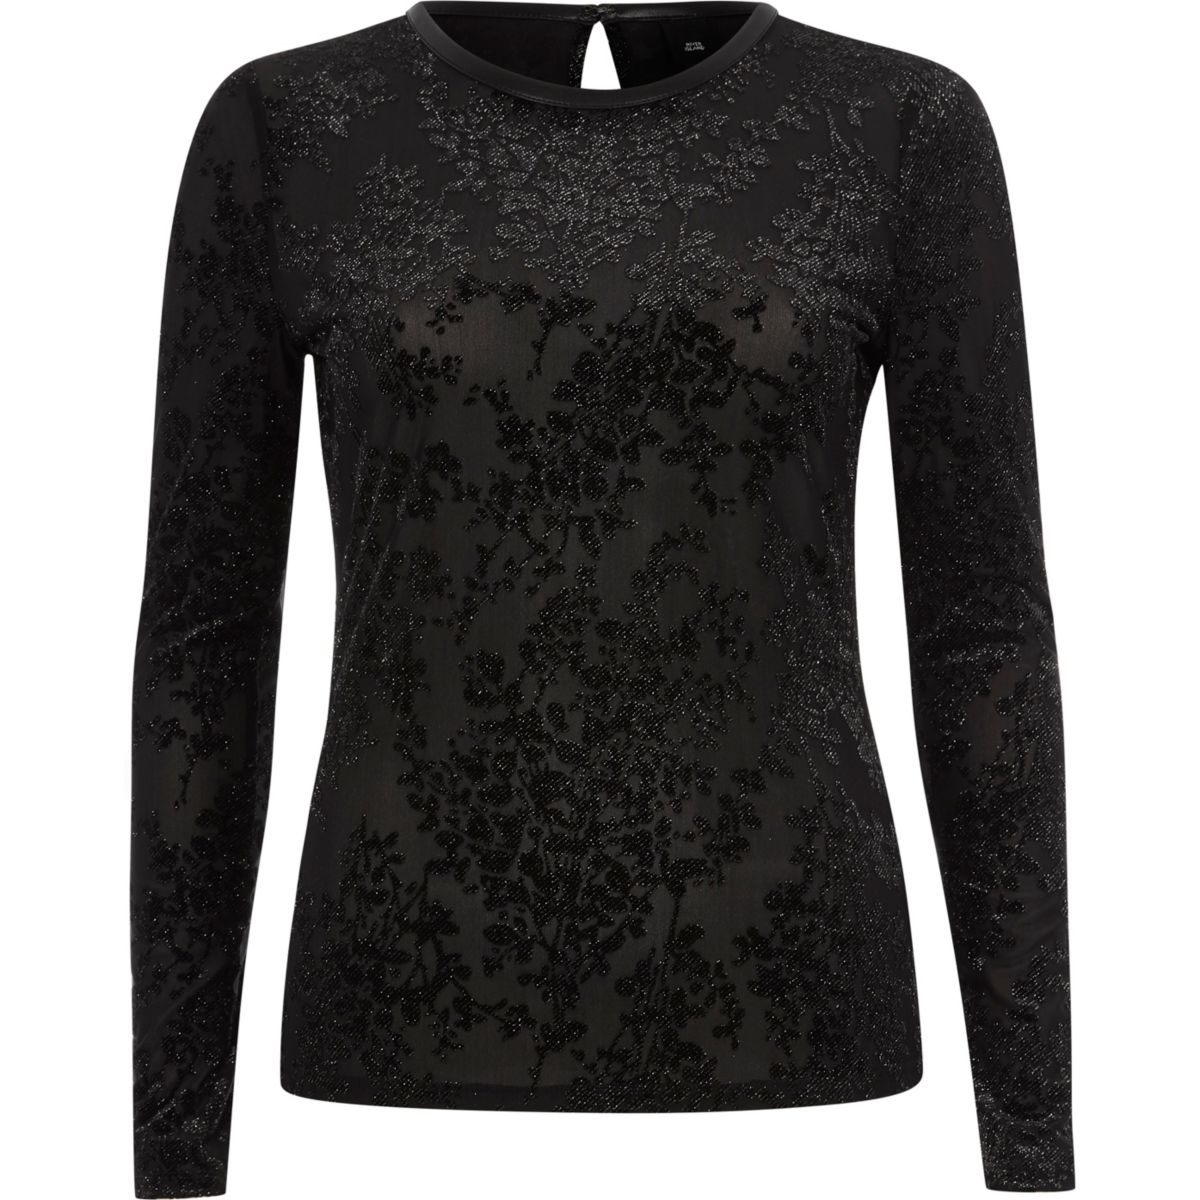 Black glitter burnout velvet fitted top - Blouses - Tops - women